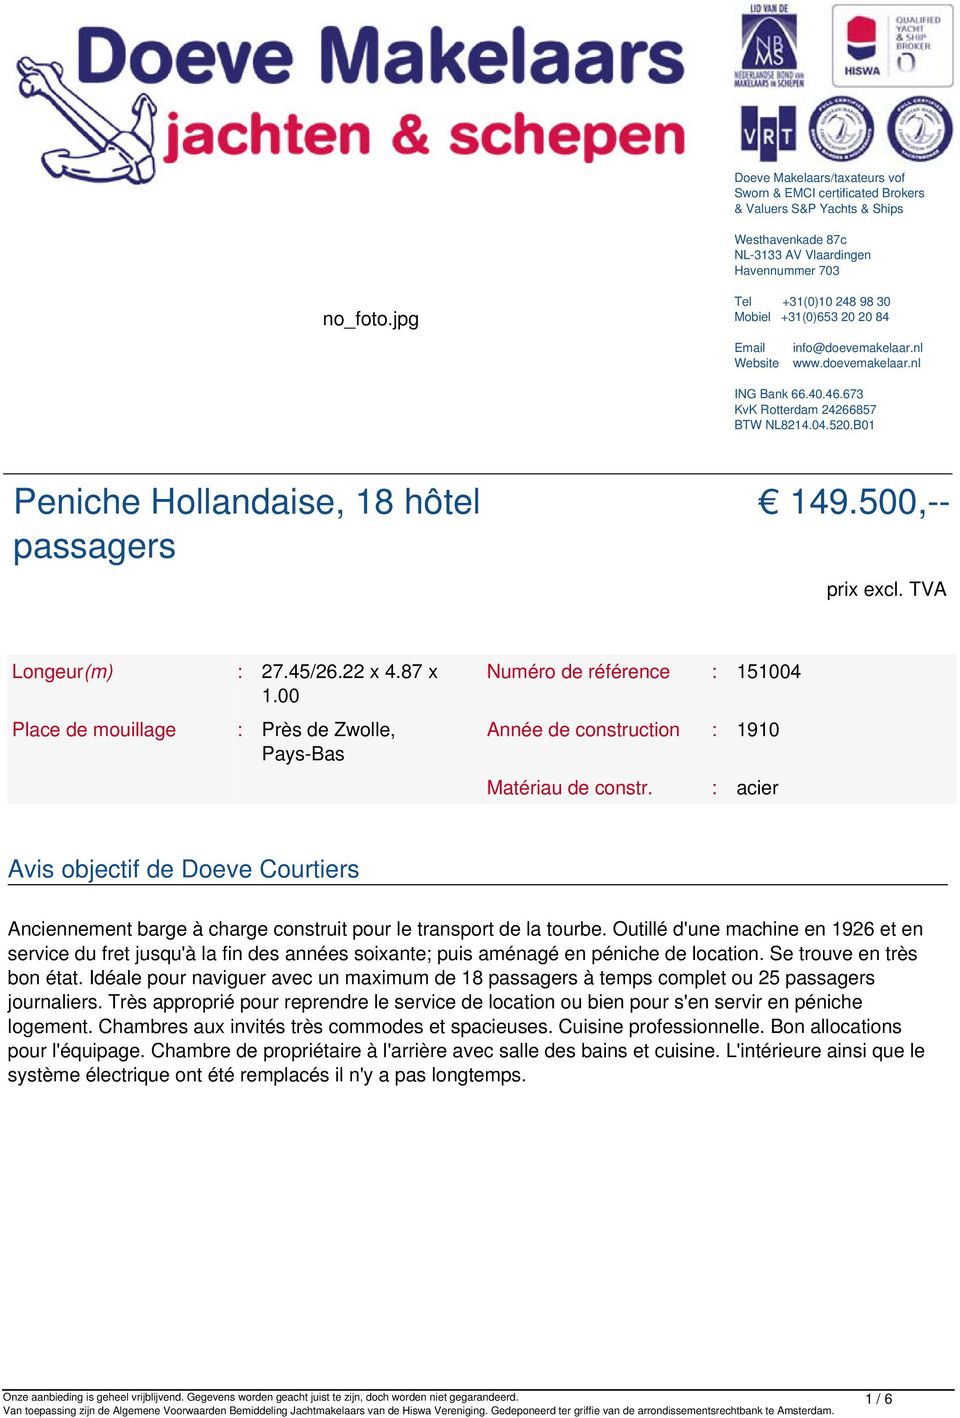 B01 Peniche Hollandaise, 18 hôtel passagers 149.500,-- prix excl. TVA Longeur(m) : 27.45/26.22 x 4.87 x 1.